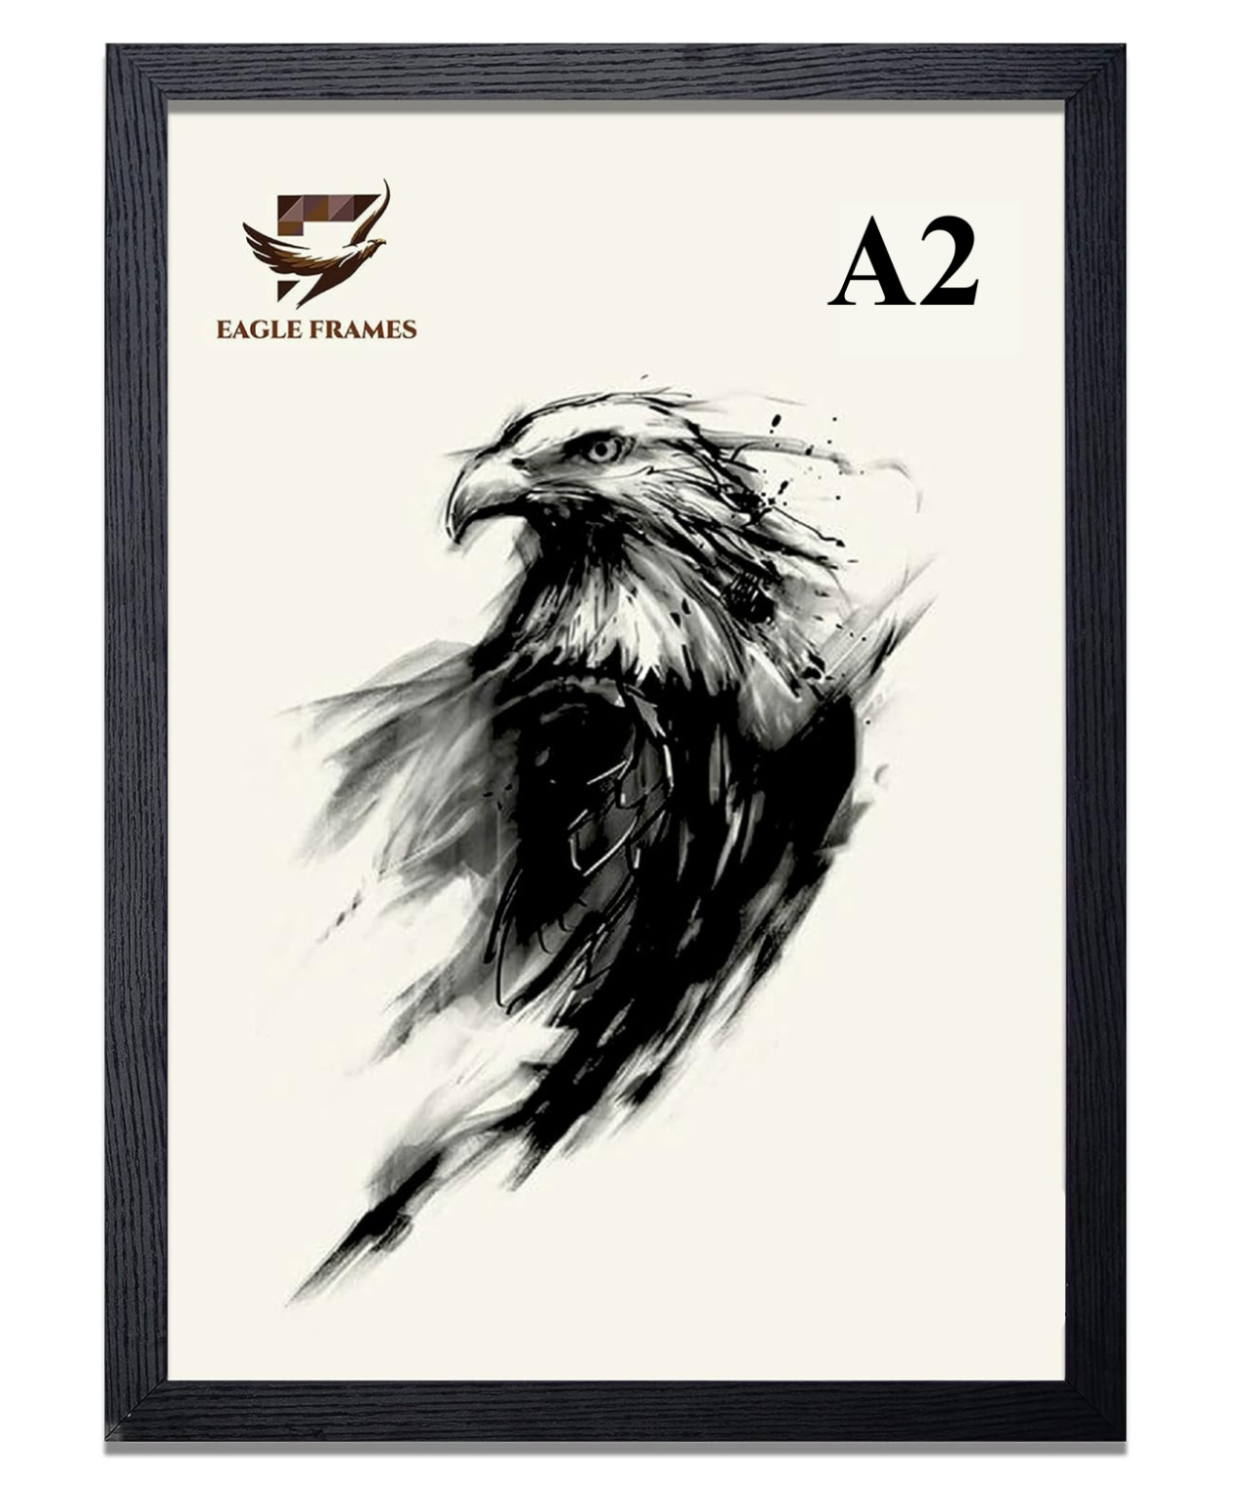 A2 Photo Frame Black Wooden - EAGLE FRAMES